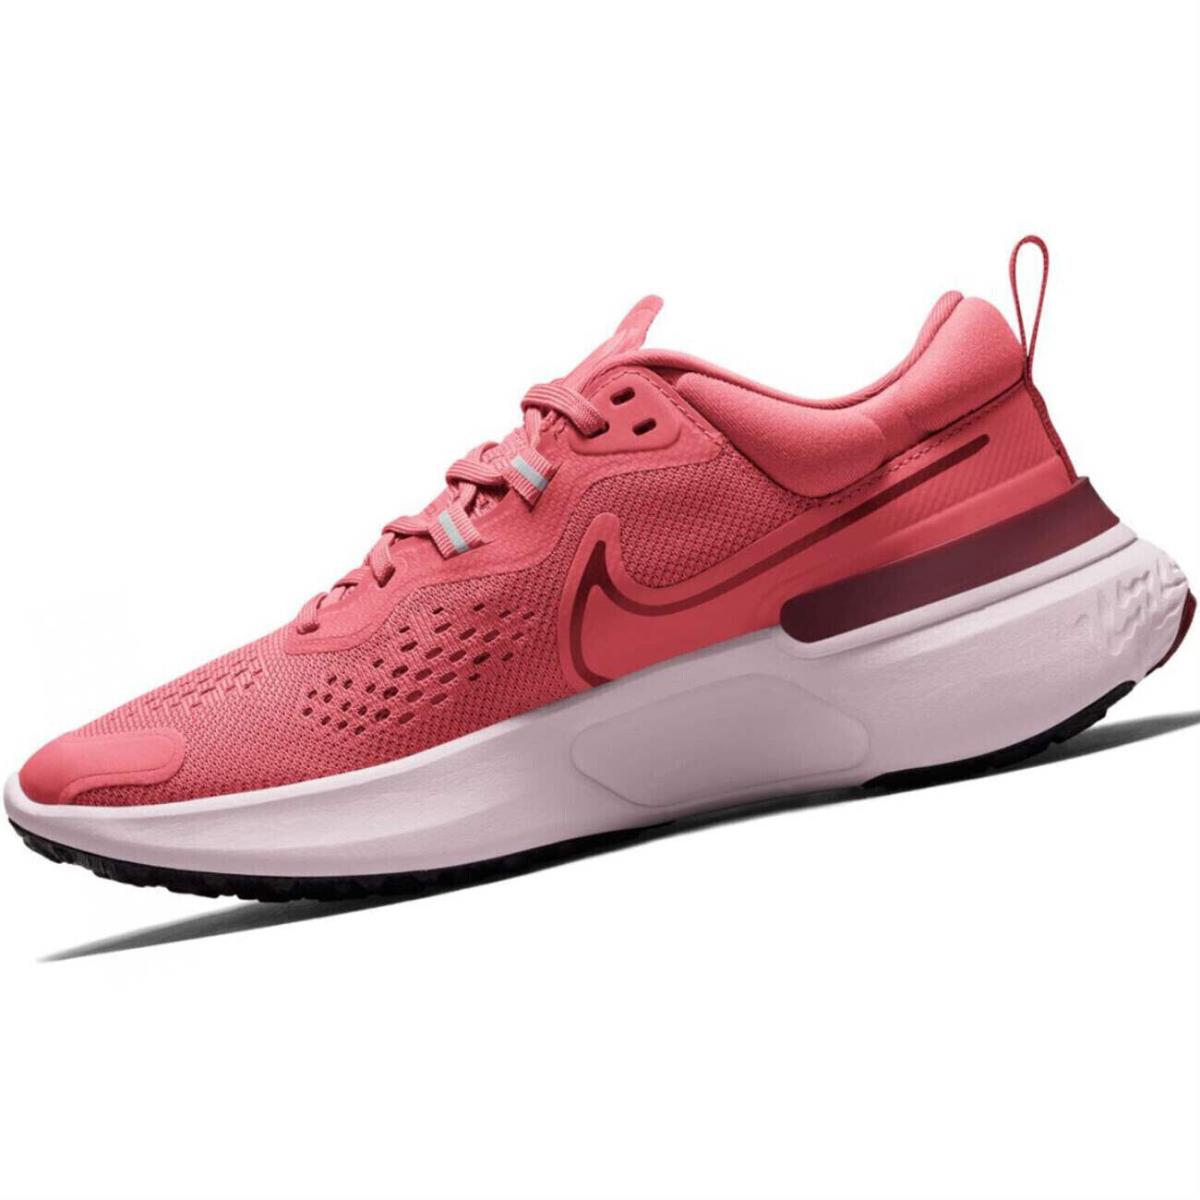 Nike shoes React Miler - Pink 2